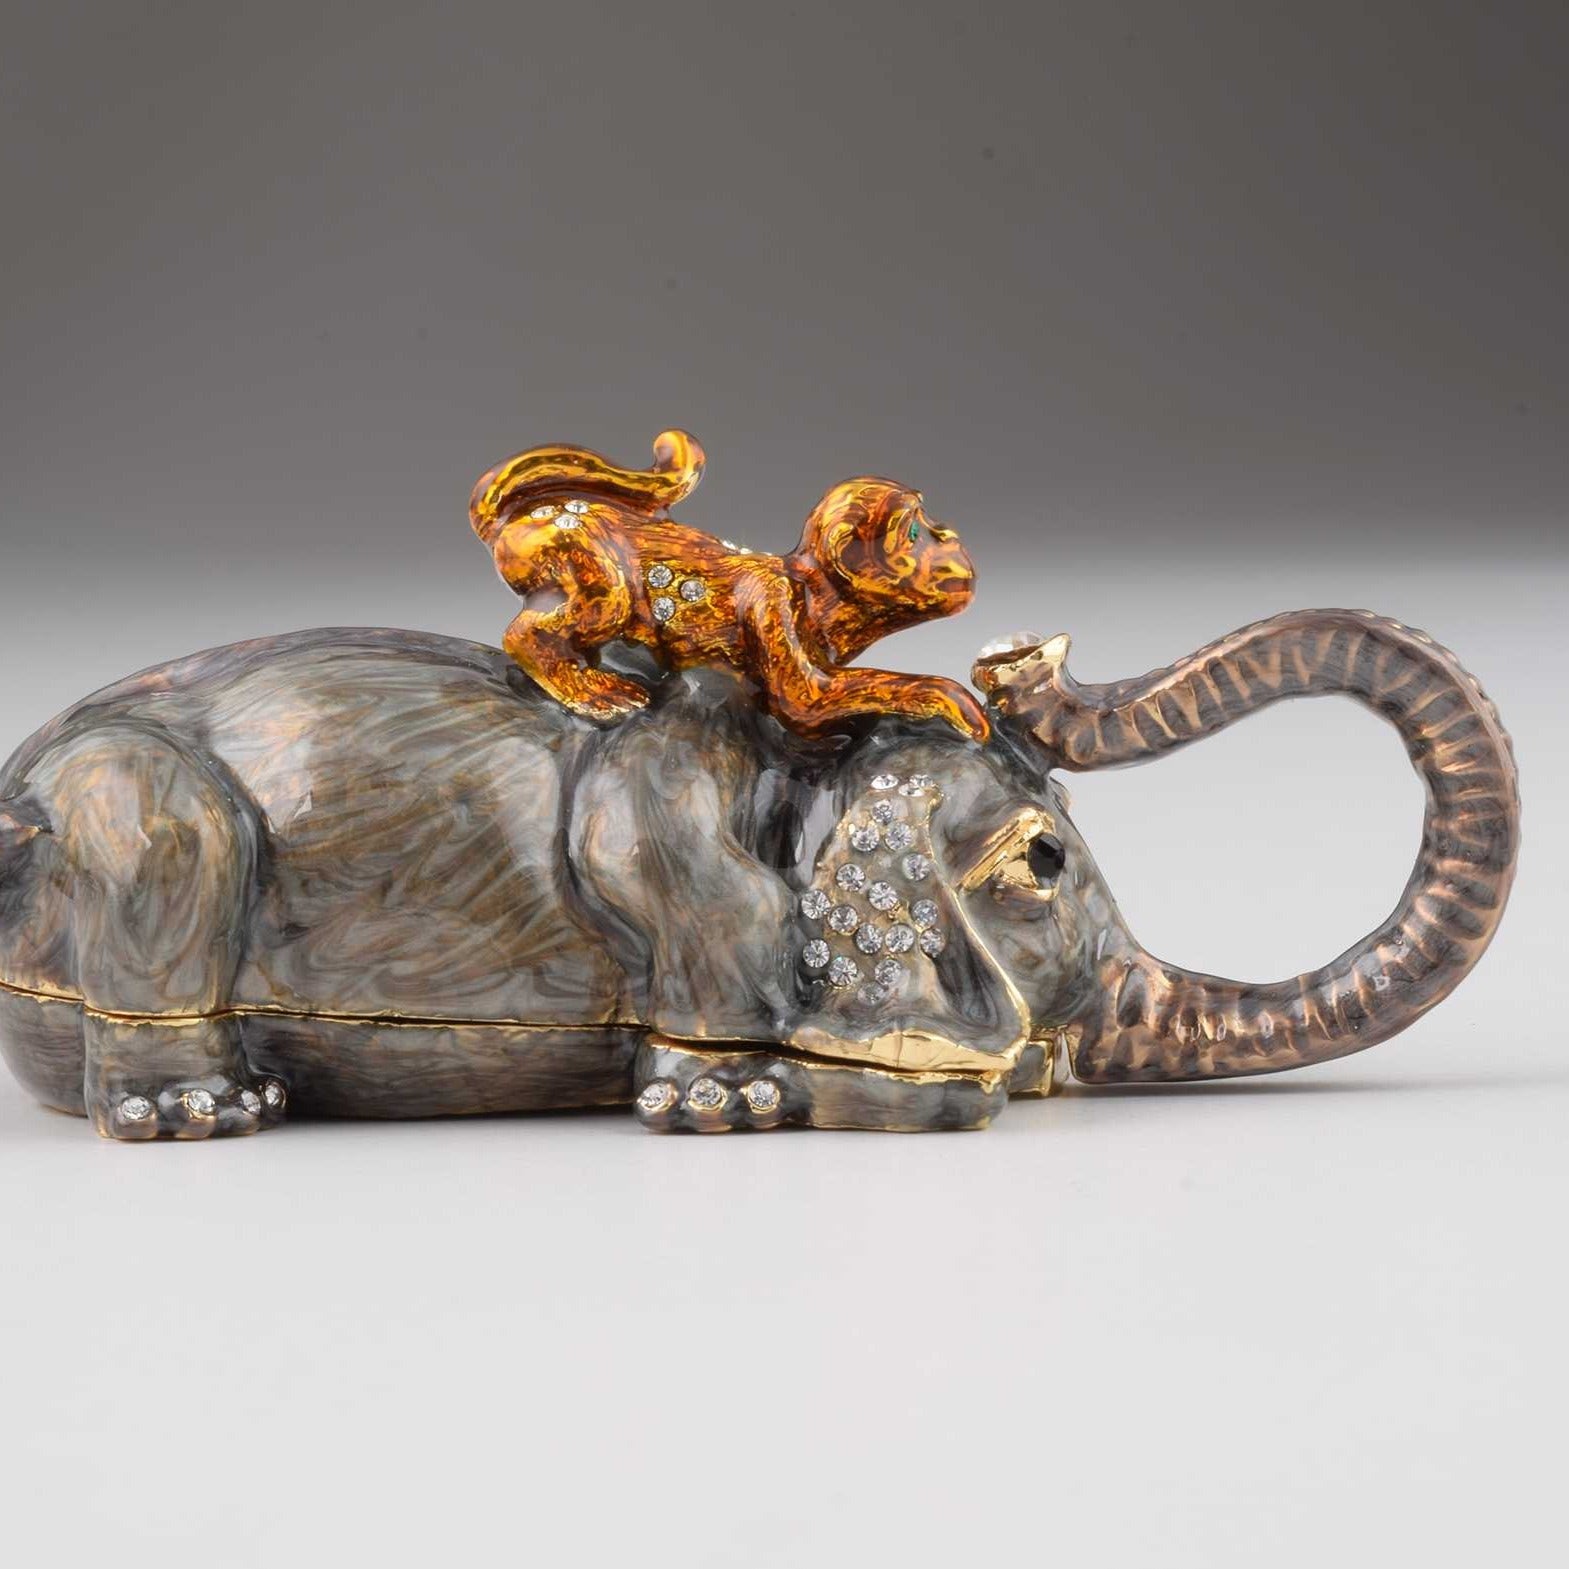 Keren Kopal Elephant with Monkey  66.50